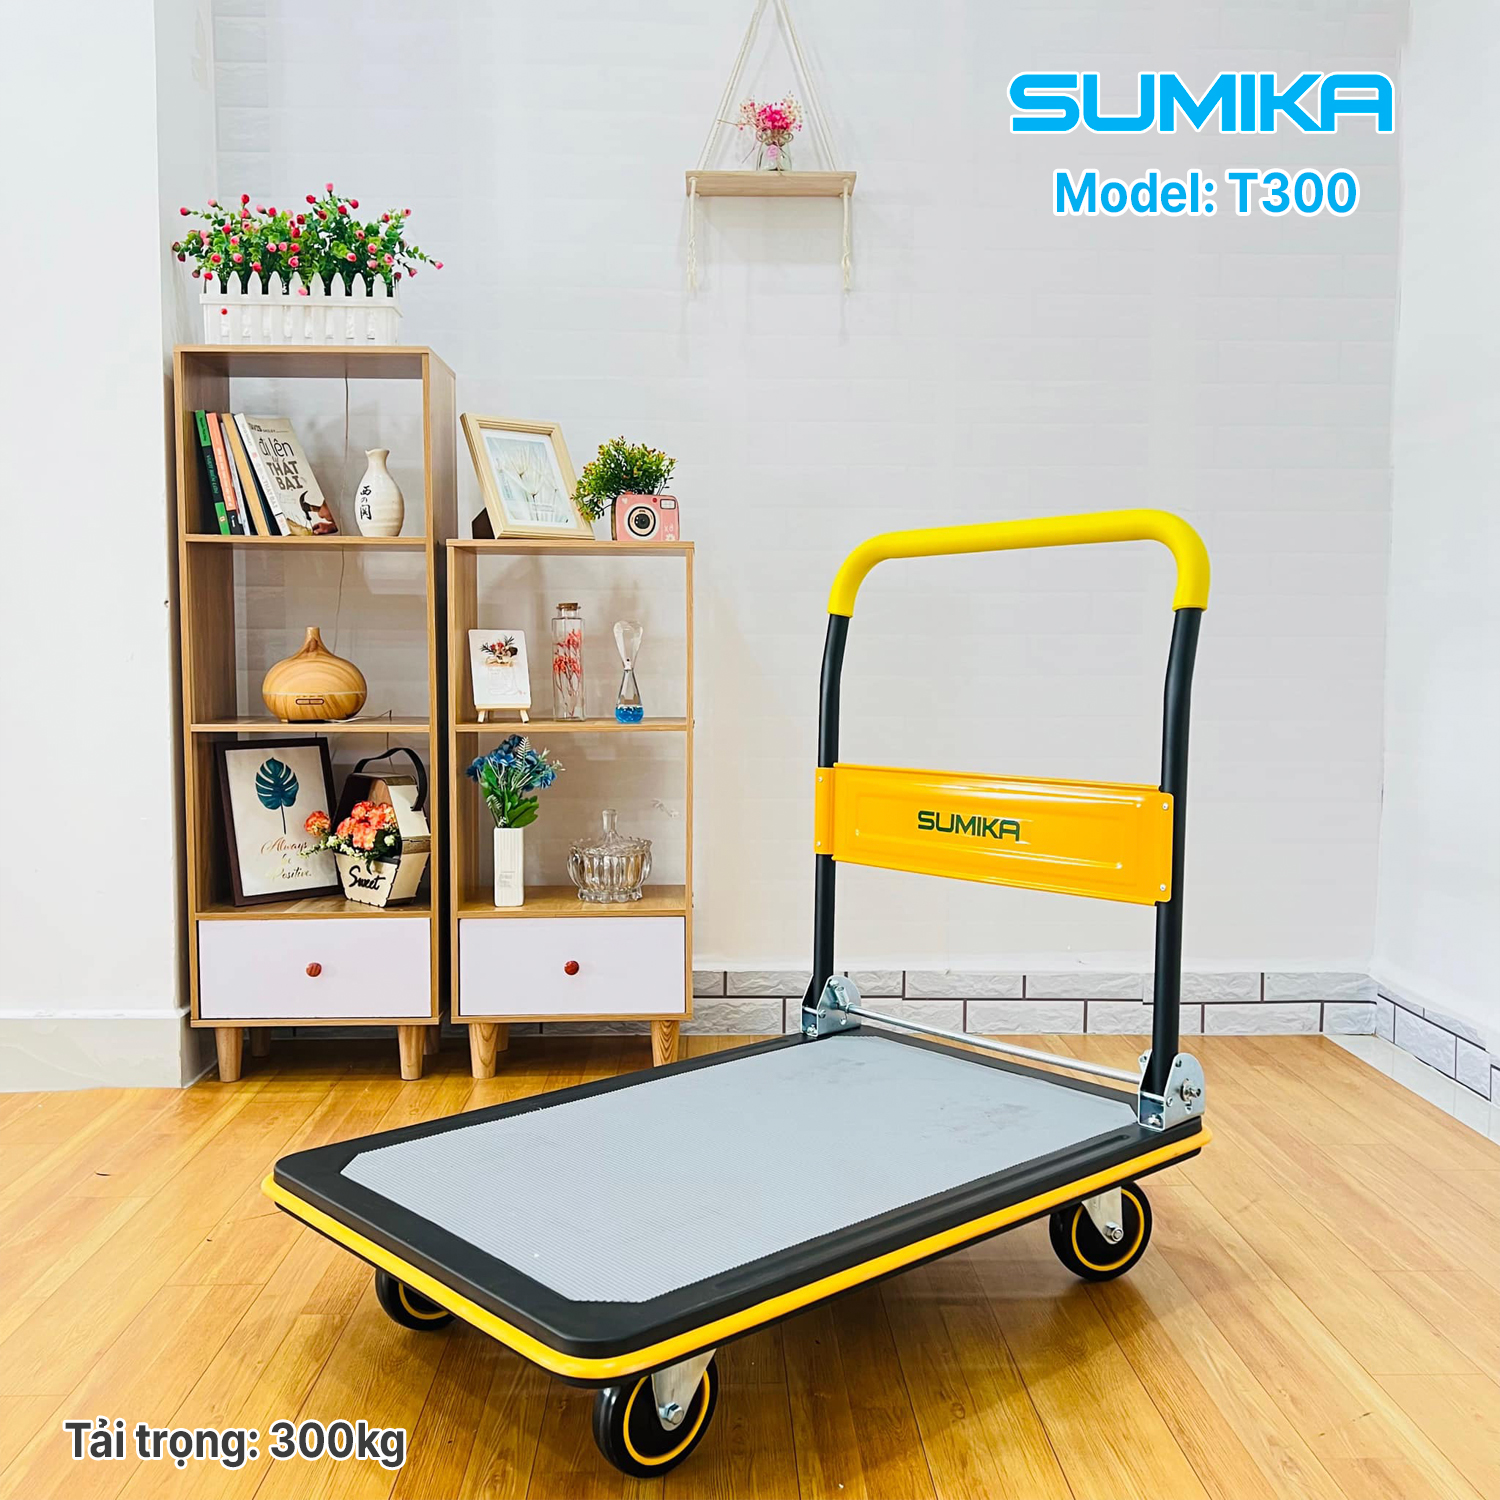 Sumika T300 goods stroller (300kg load)